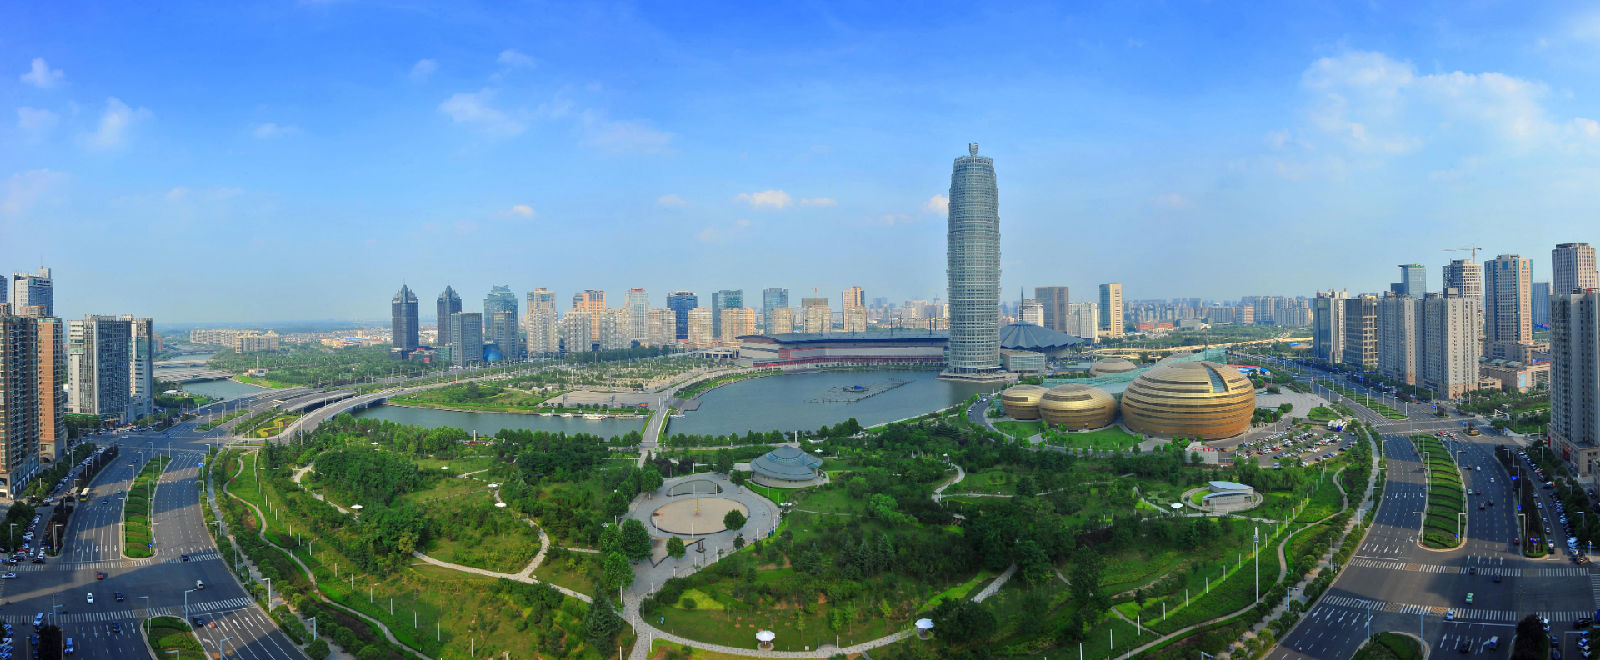 中国环境报:郑州:奋楫争先 黄河之畔营造天蓝水清地绿生态城 